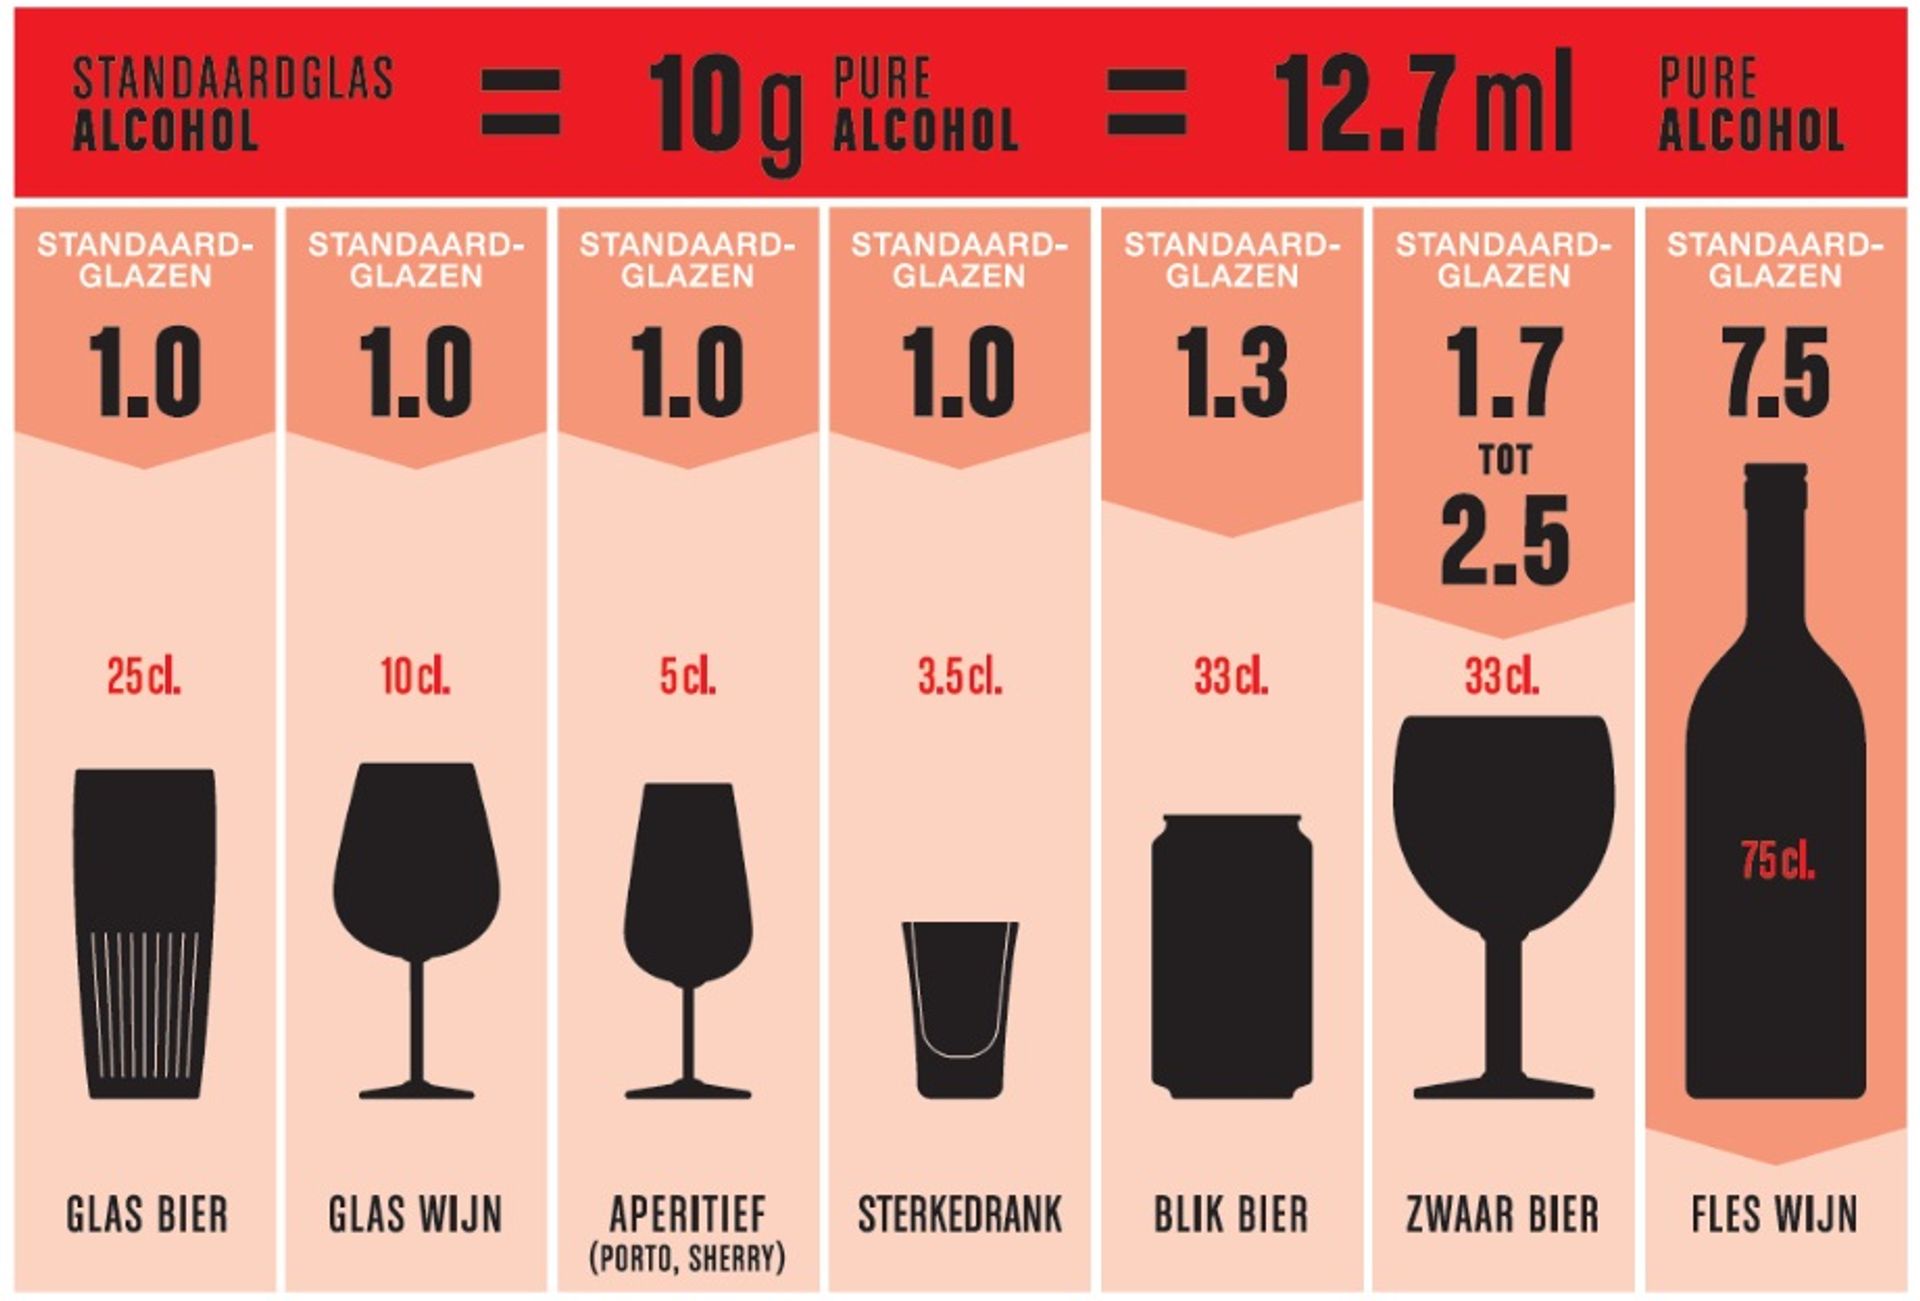 Bron: VAD vzw (Vlaams Expertisecentrum voor Alcohol en Andere Drugs), brochure 'Hoeveel is teveel?'